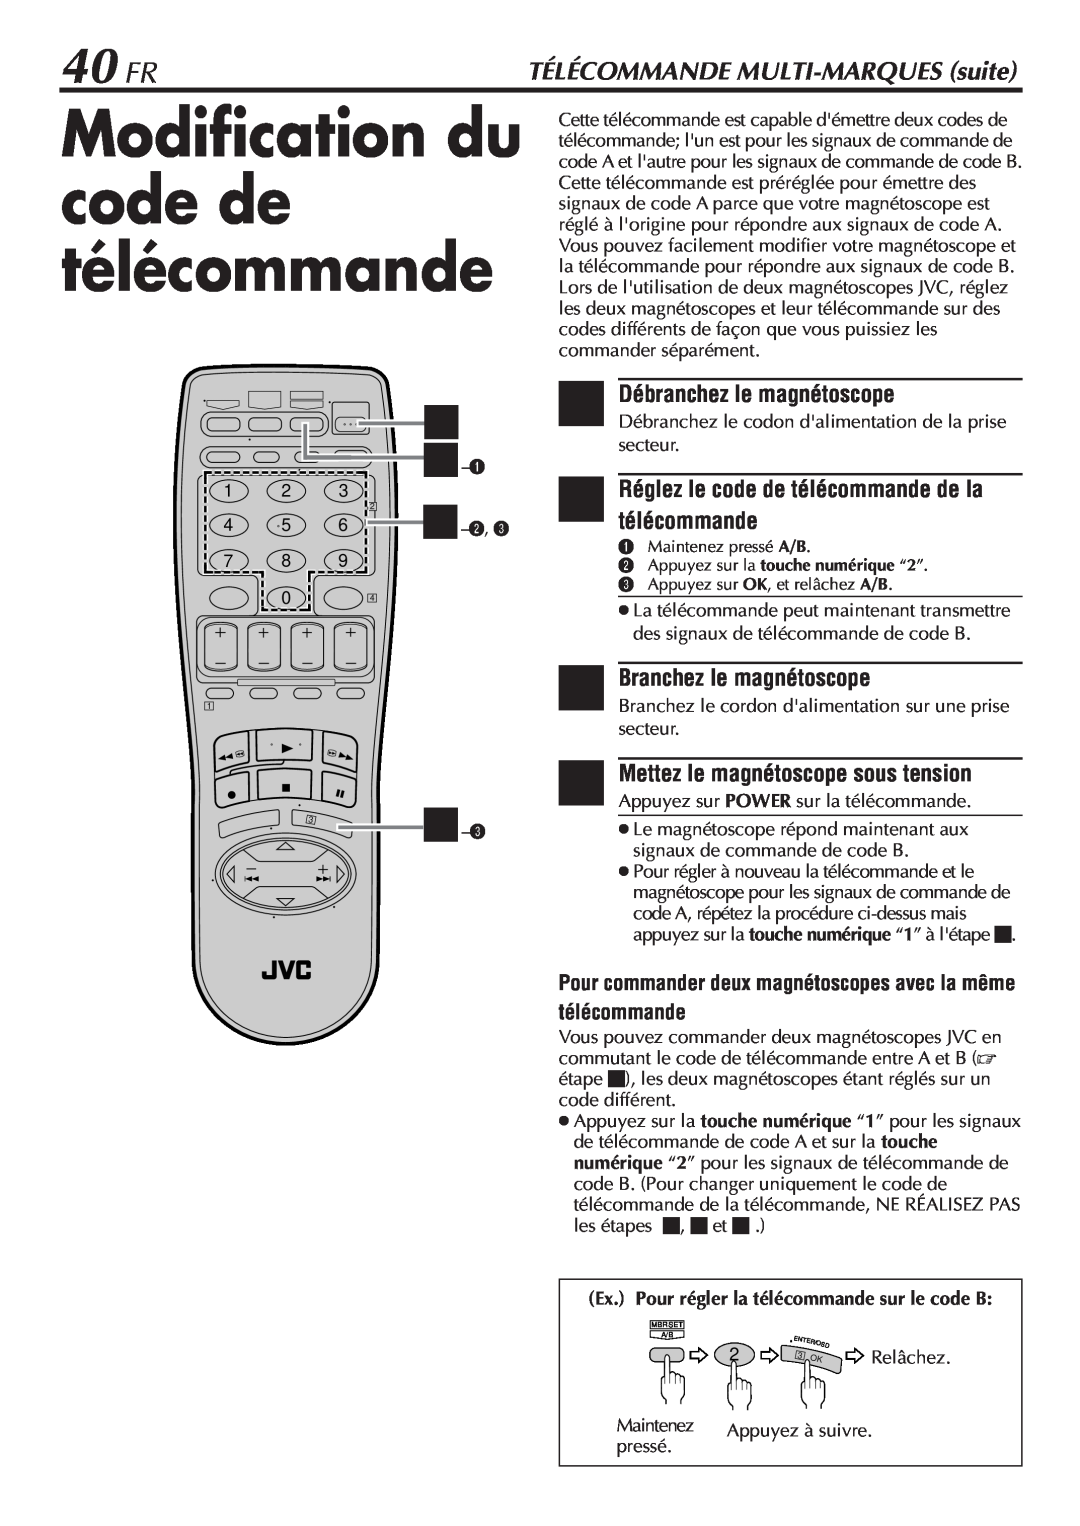 JVC HR-VP58U manual Modification du code de télécommande, 40 FR, 2 Réglez le code de télécommande de la télécommande 